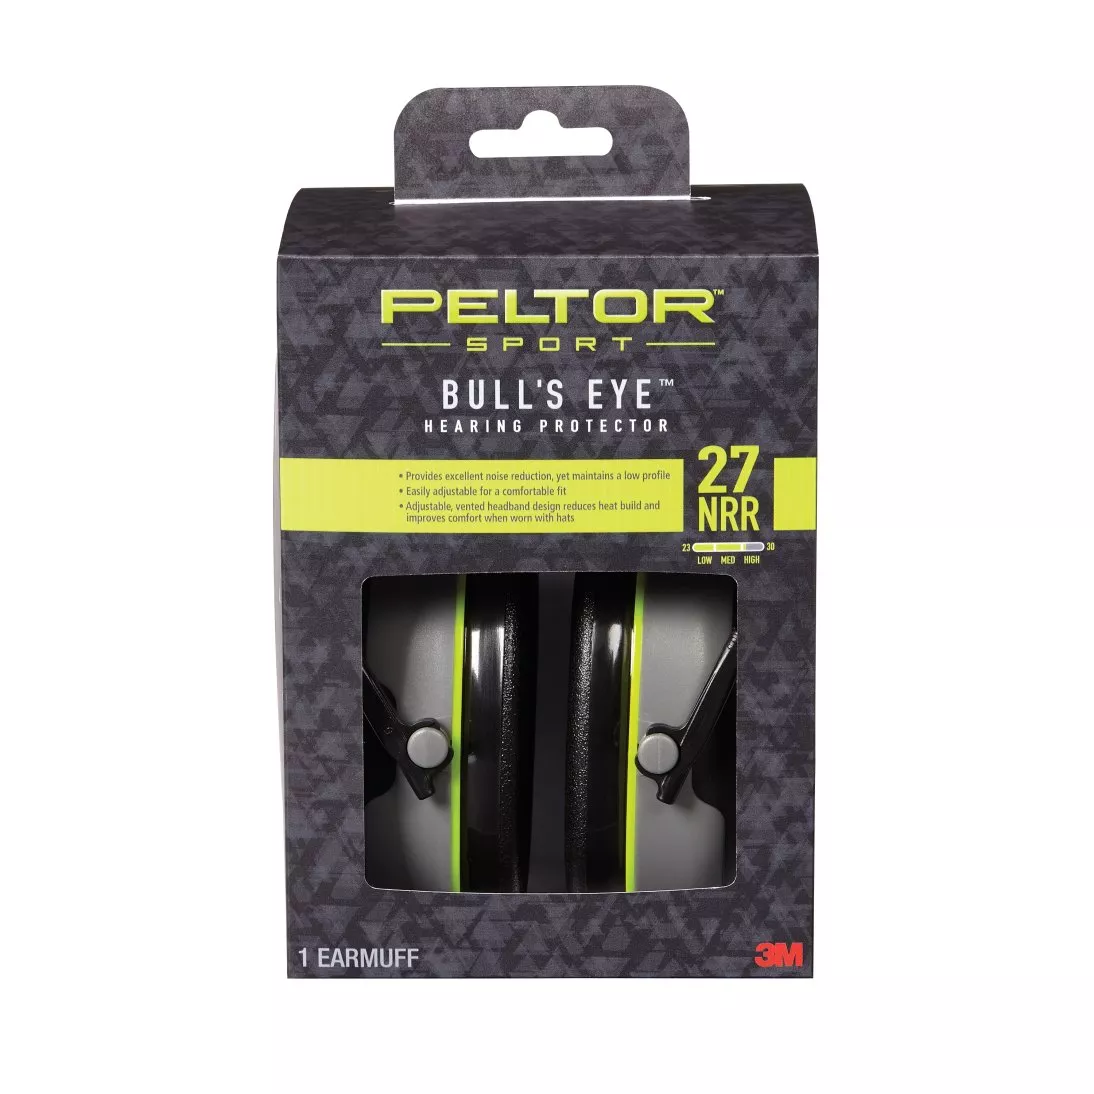 Peltor™ Sport Bull's Eye™ Hearing Protector, 97041-PEL-6C, 27 NRR
Black/Gray